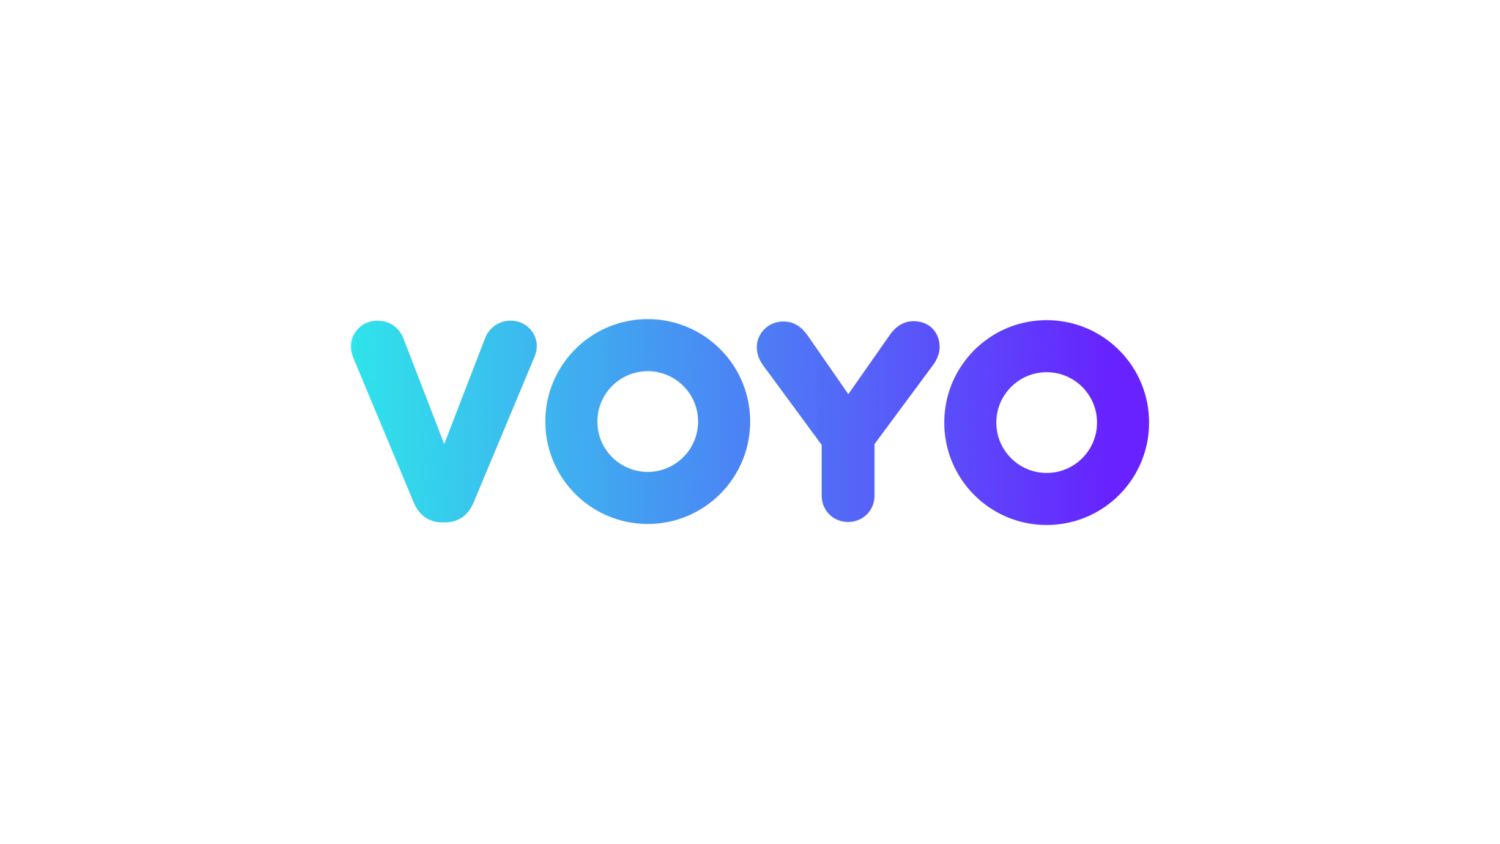 Popularita Voya stoupá. Streamovací platforma překonala půl milionu uživatelů